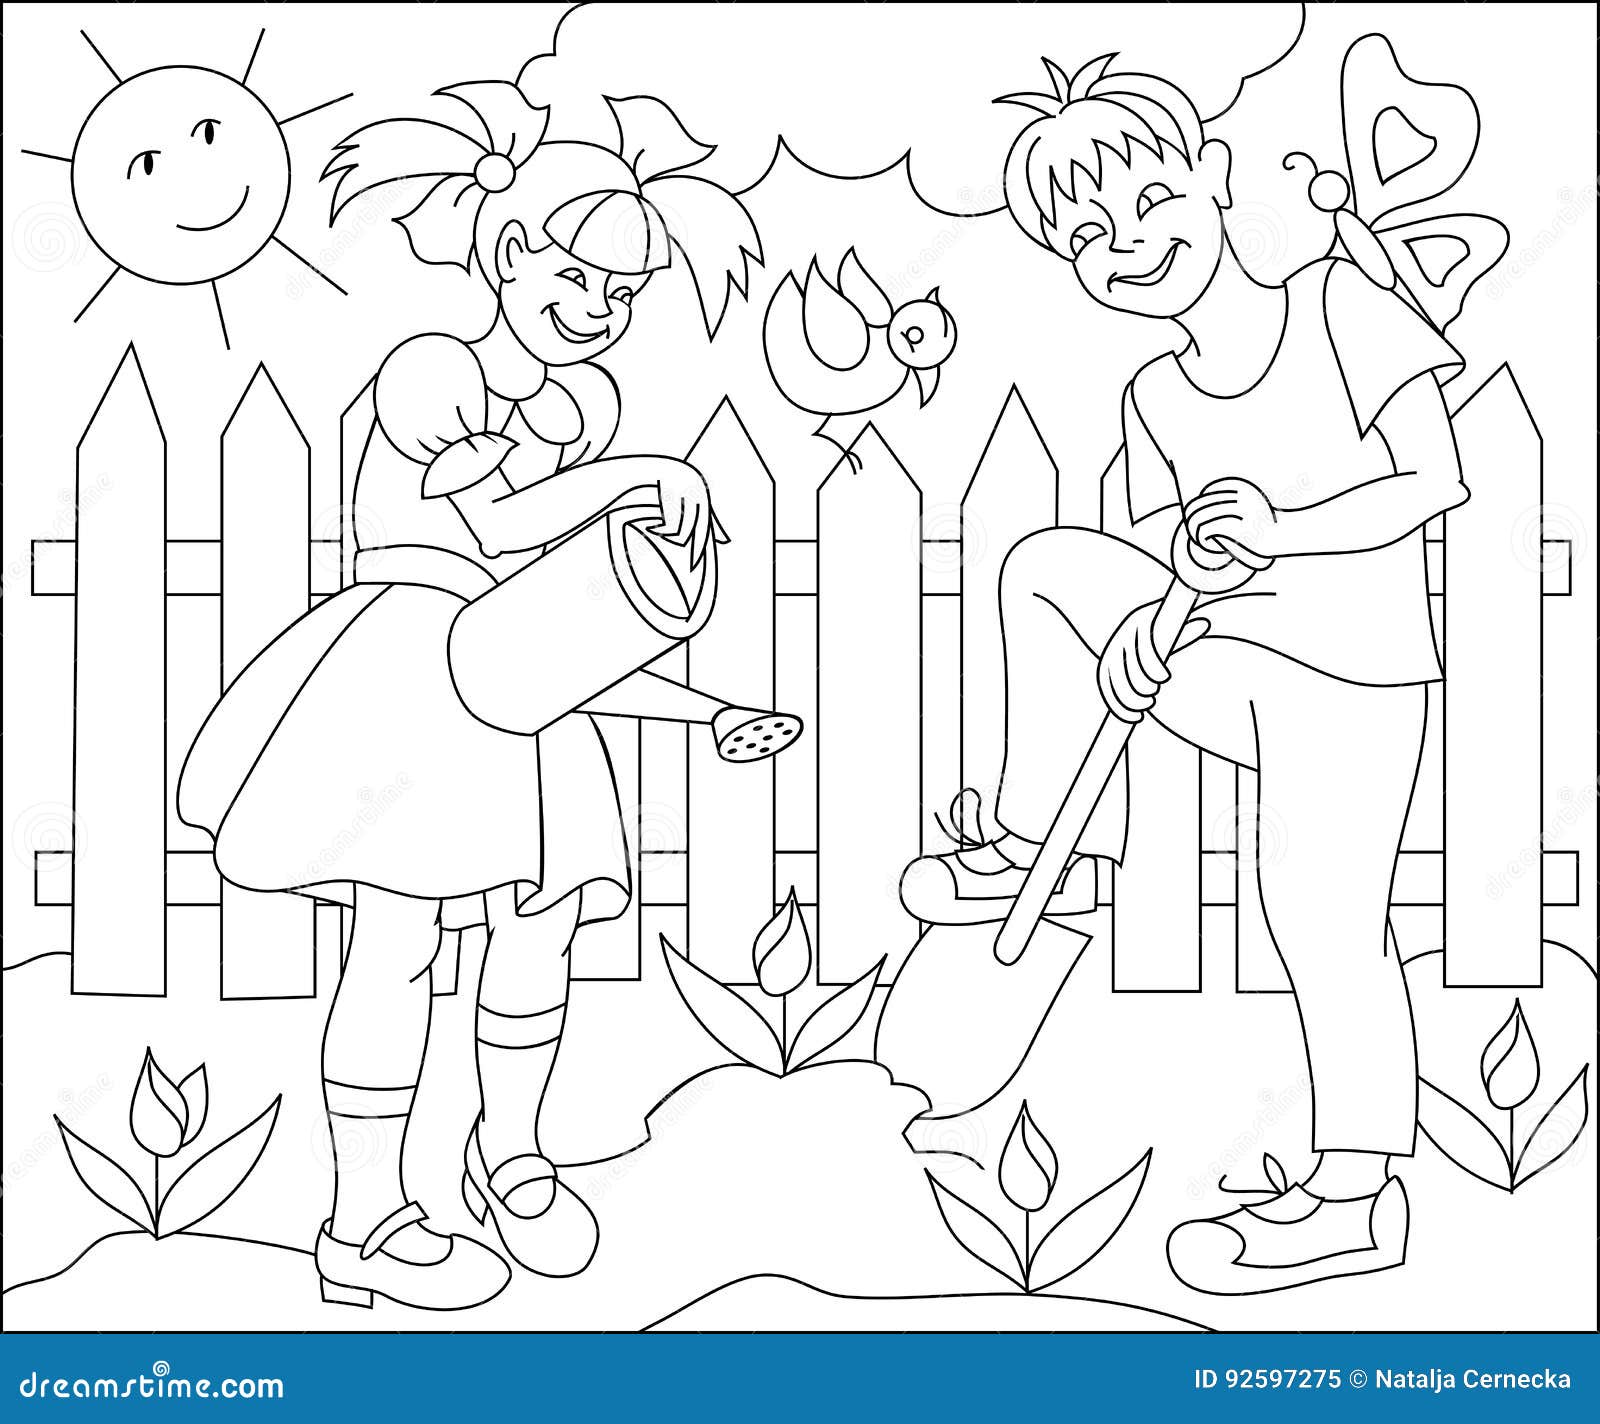 Pagina Con Il Disegno In Bianco E Nero Per Colorare Illustrazione Dei Bambini Che Lavorano In Primavera Giardino Illustrazione Vettoriale Illustrazione Di Fantasia Profilo